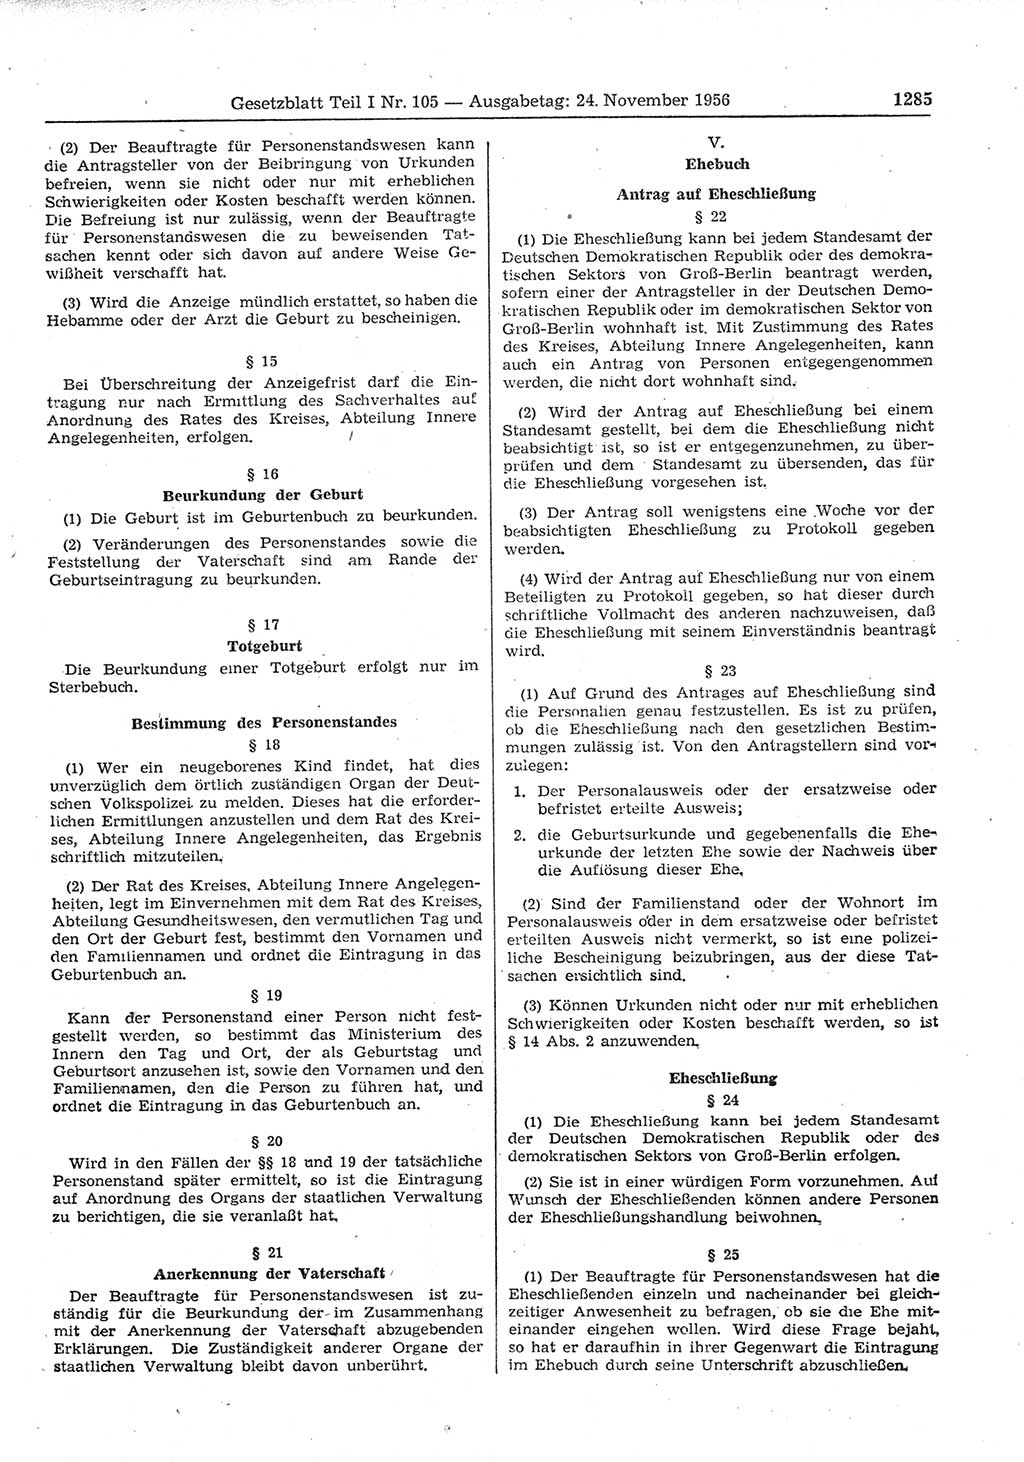 Gesetzblatt (GBl.) der Deutschen Demokratischen Republik (DDR) Teil Ⅰ 1956, Seite 1285 (GBl. DDR Ⅰ 1956, S. 1285)